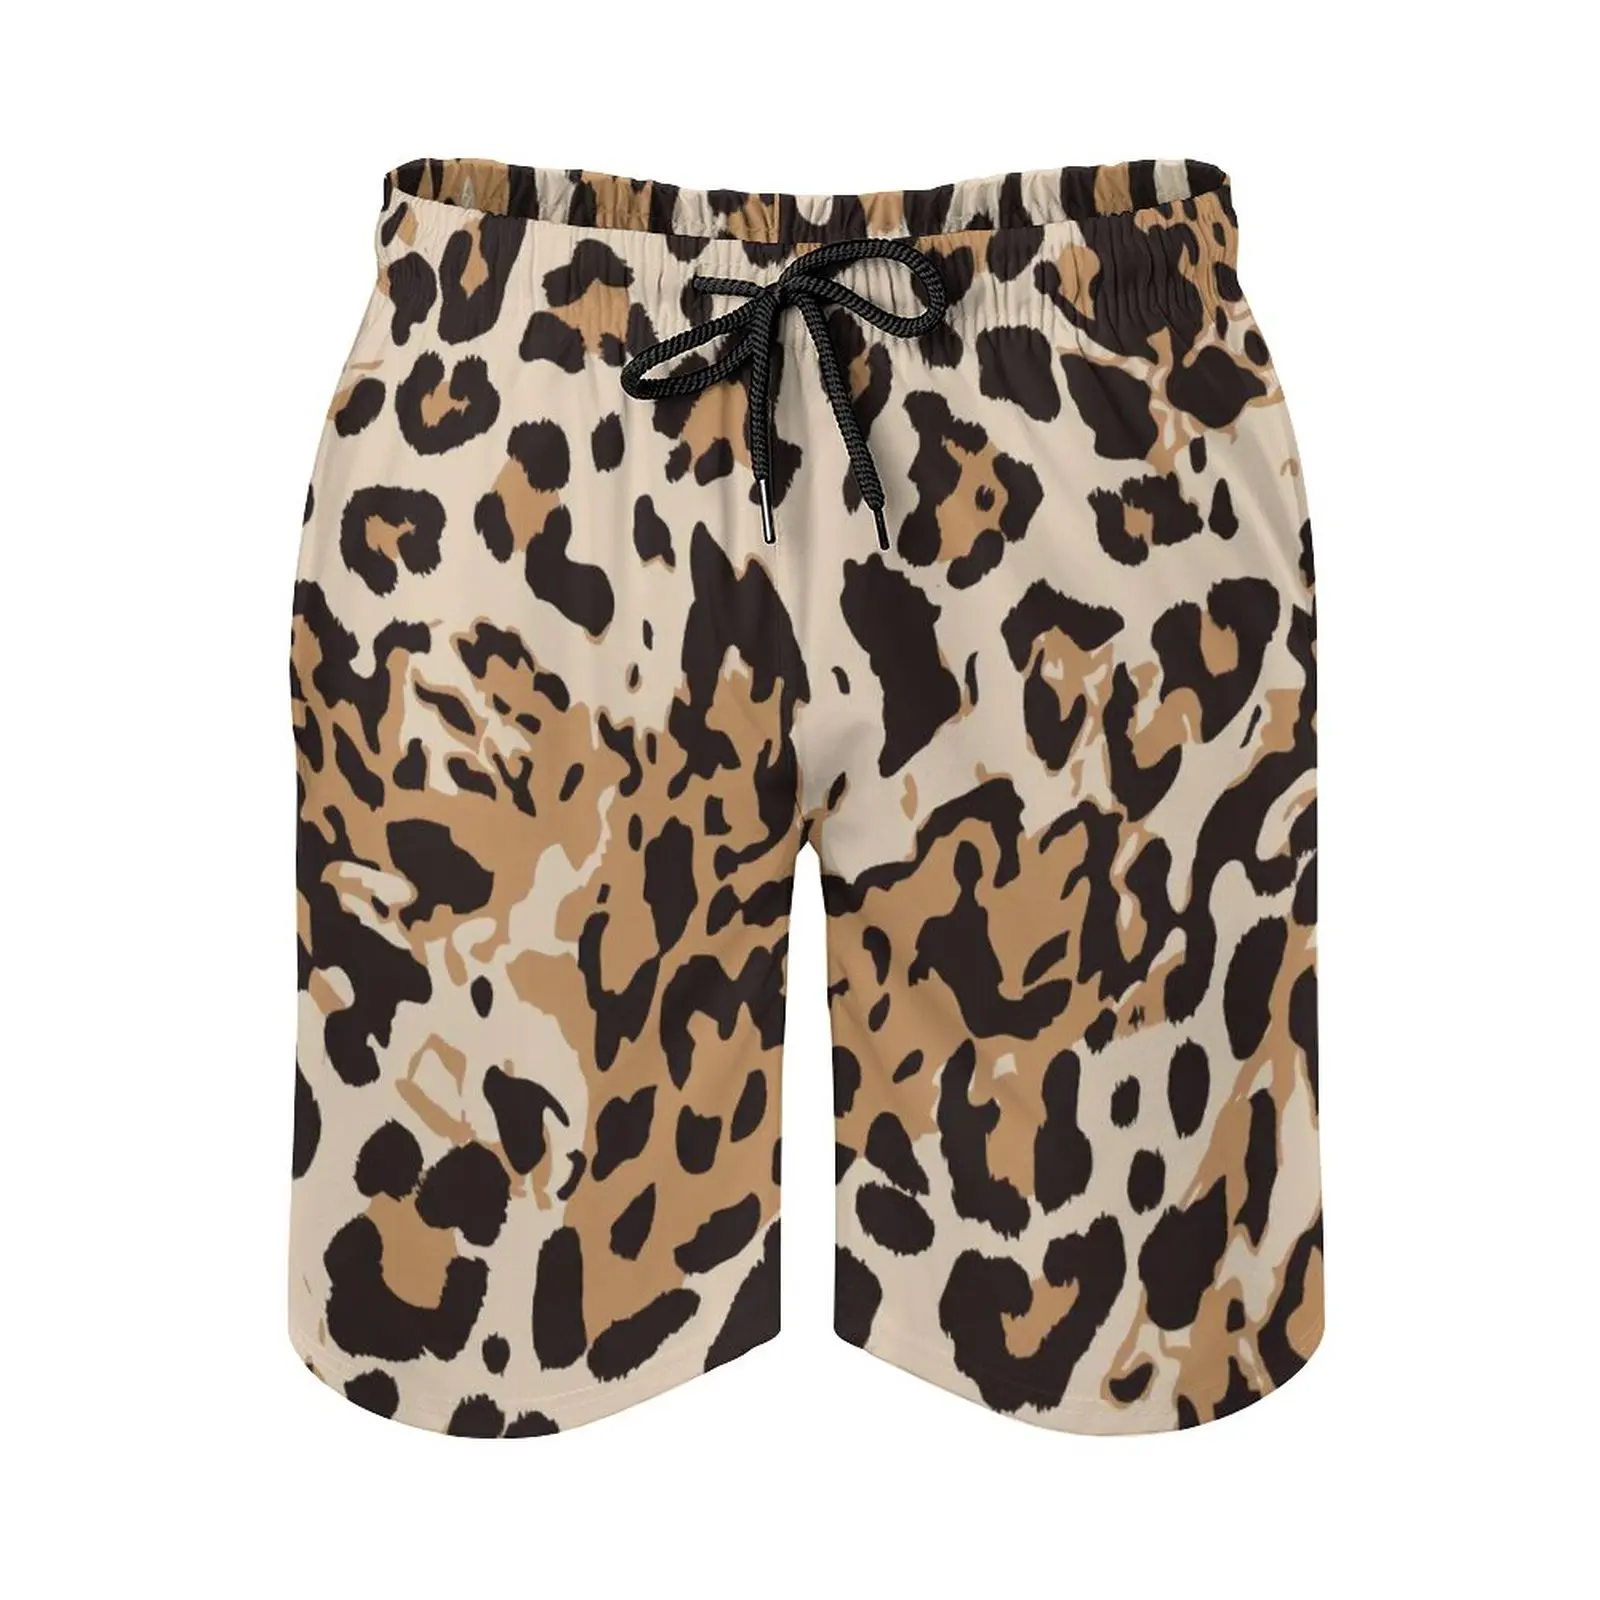 Leopard Print Pantaloni Scurti De Vara Piele De Animal Design Abstract De Funcționare Plaja Pantaloni Scurti Barbati Vintage Personalizat Supradimensionat Trunchiuri De Înot . ' - ' . 2